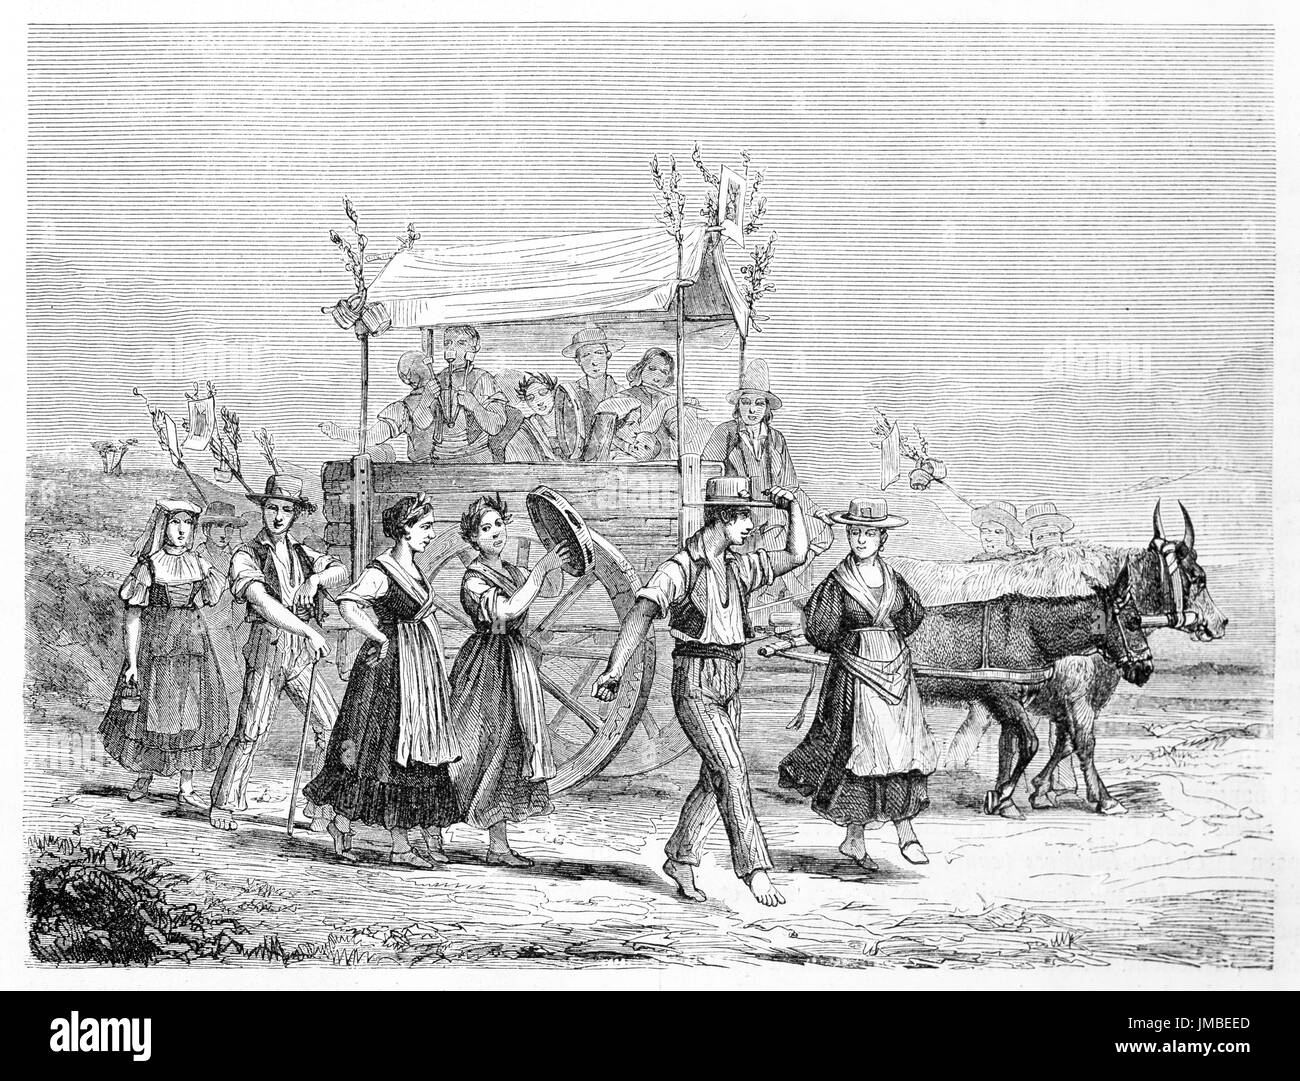 Ilustración antigua del napolitano a la gente que volvía de una fiesta. Creado por Bergue, publicado en Le Tour du Monde, París, 1861 Foto de stock